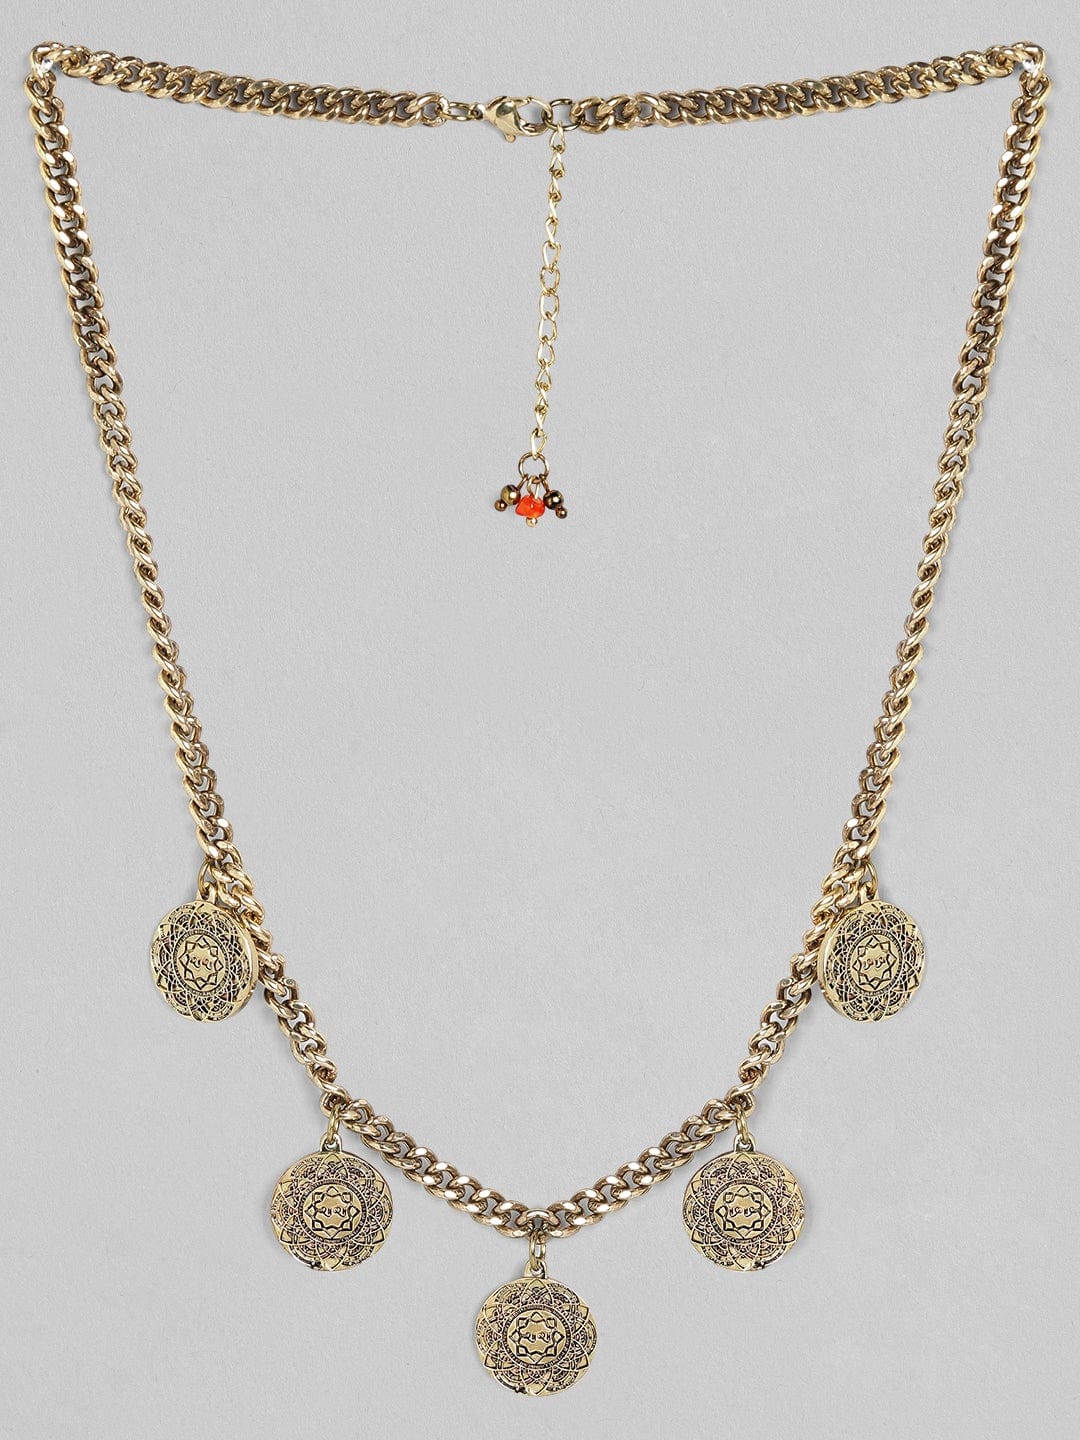 Rubans Voguish Antique Polish Coin Necklace. Chain &amp; Necklaces